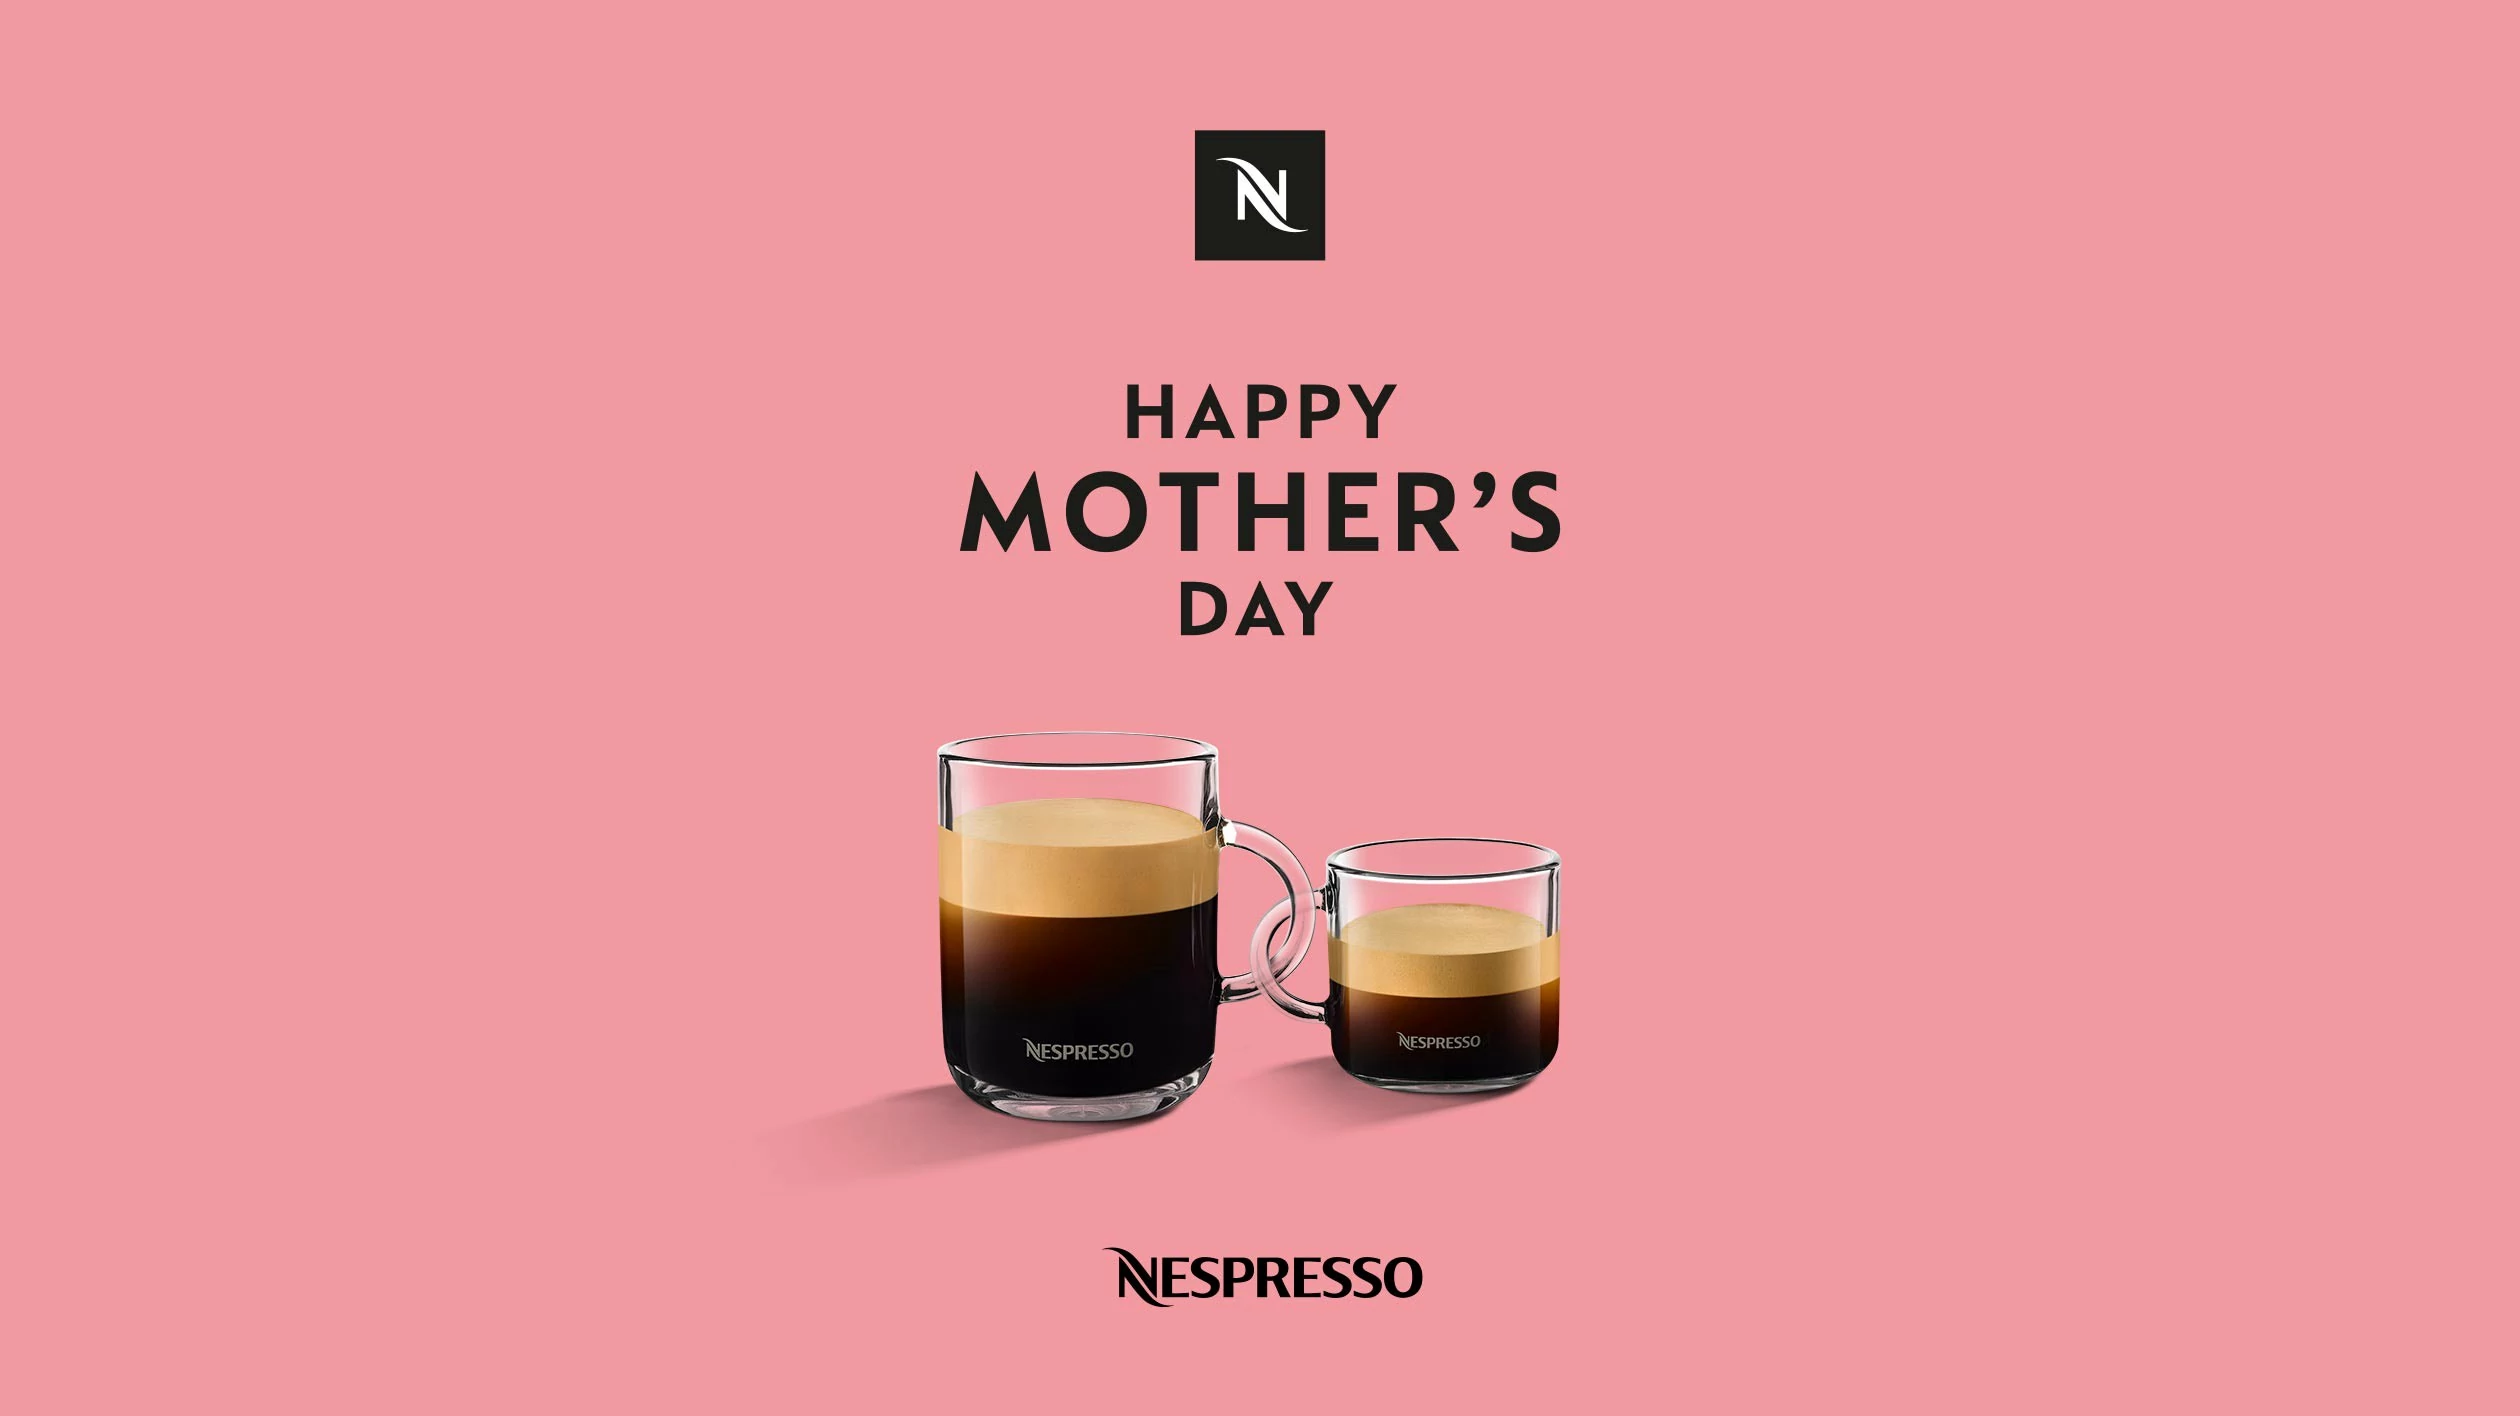 Zwei Nespresso Kaffeetassen vor einem einfarbigen Hintergrund. Die Henkel der Tassen sind ineinander verschlungen. Über den Tassen steht “Happy Mother‘s Day”.